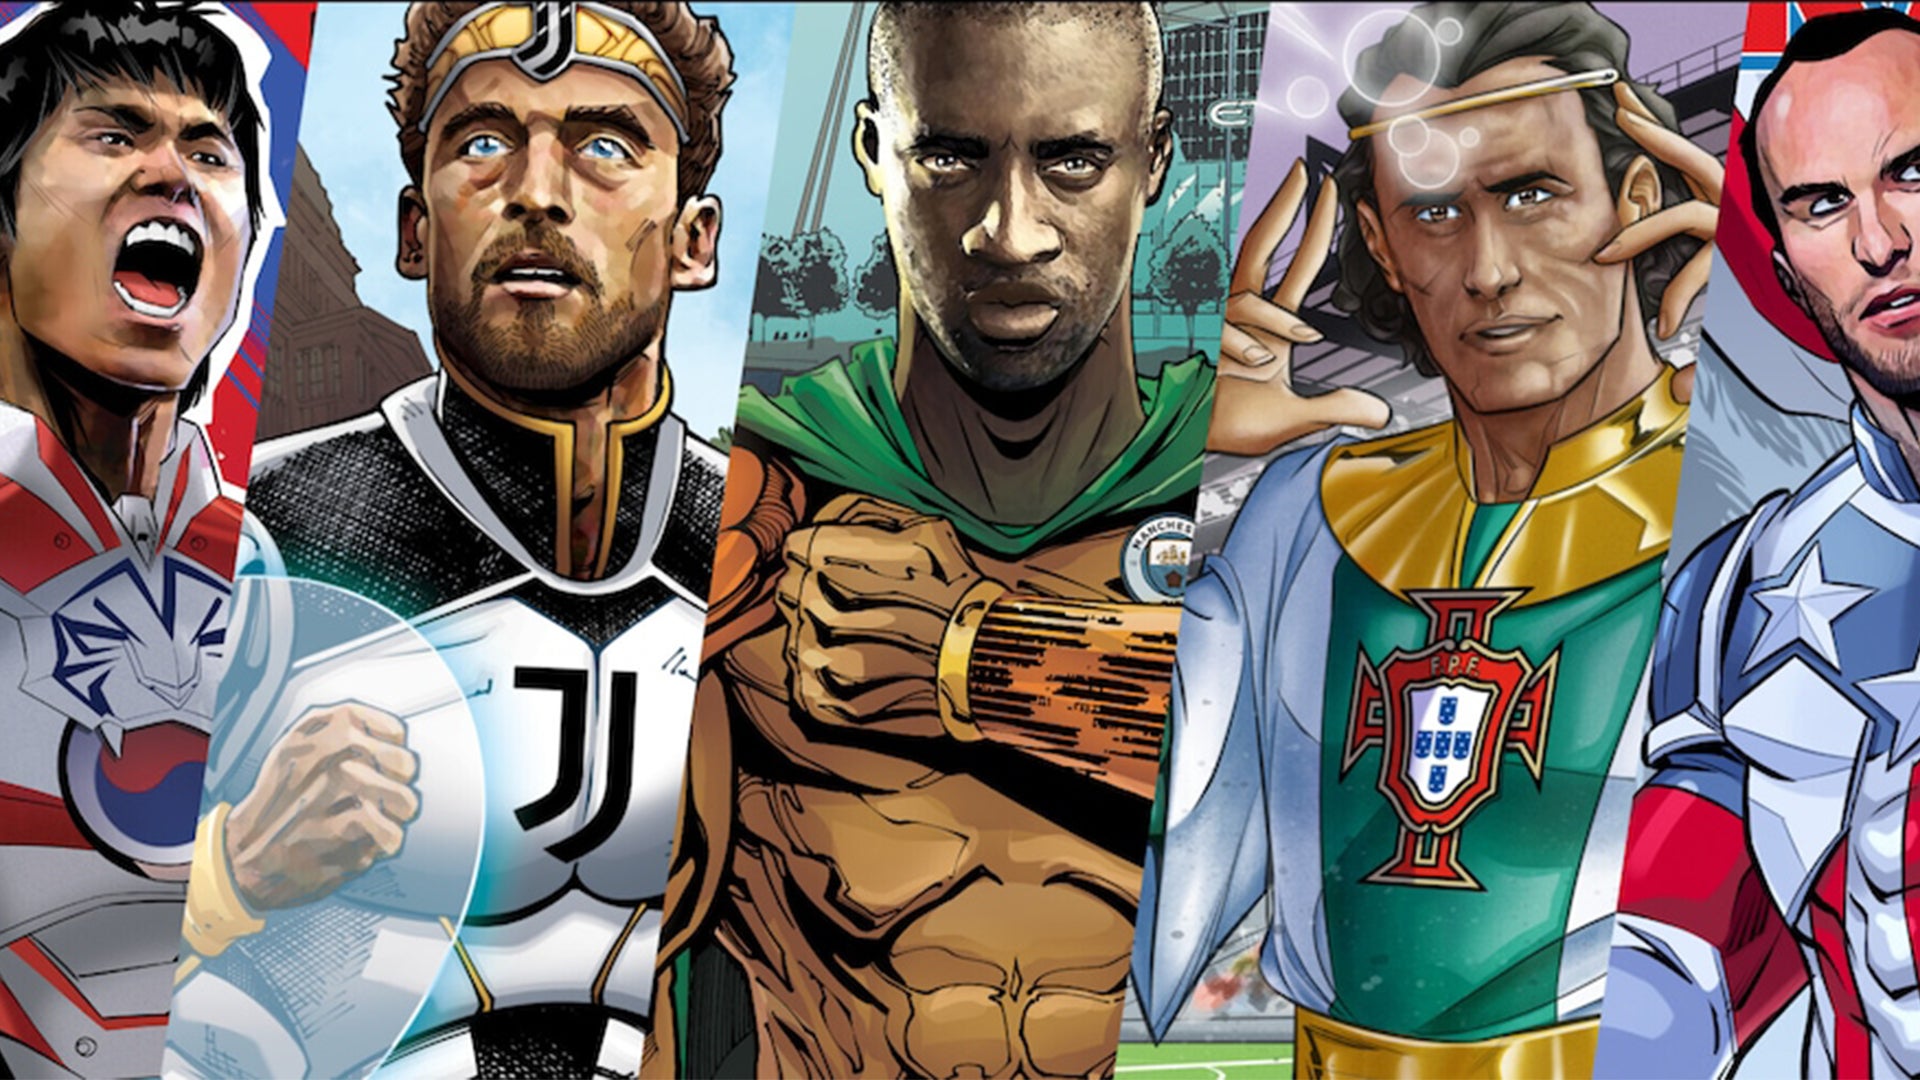 Immagine di FIFA 23: ecco i valori dei calciatori trasformati in eroi Marvel dopo questa strana partnership